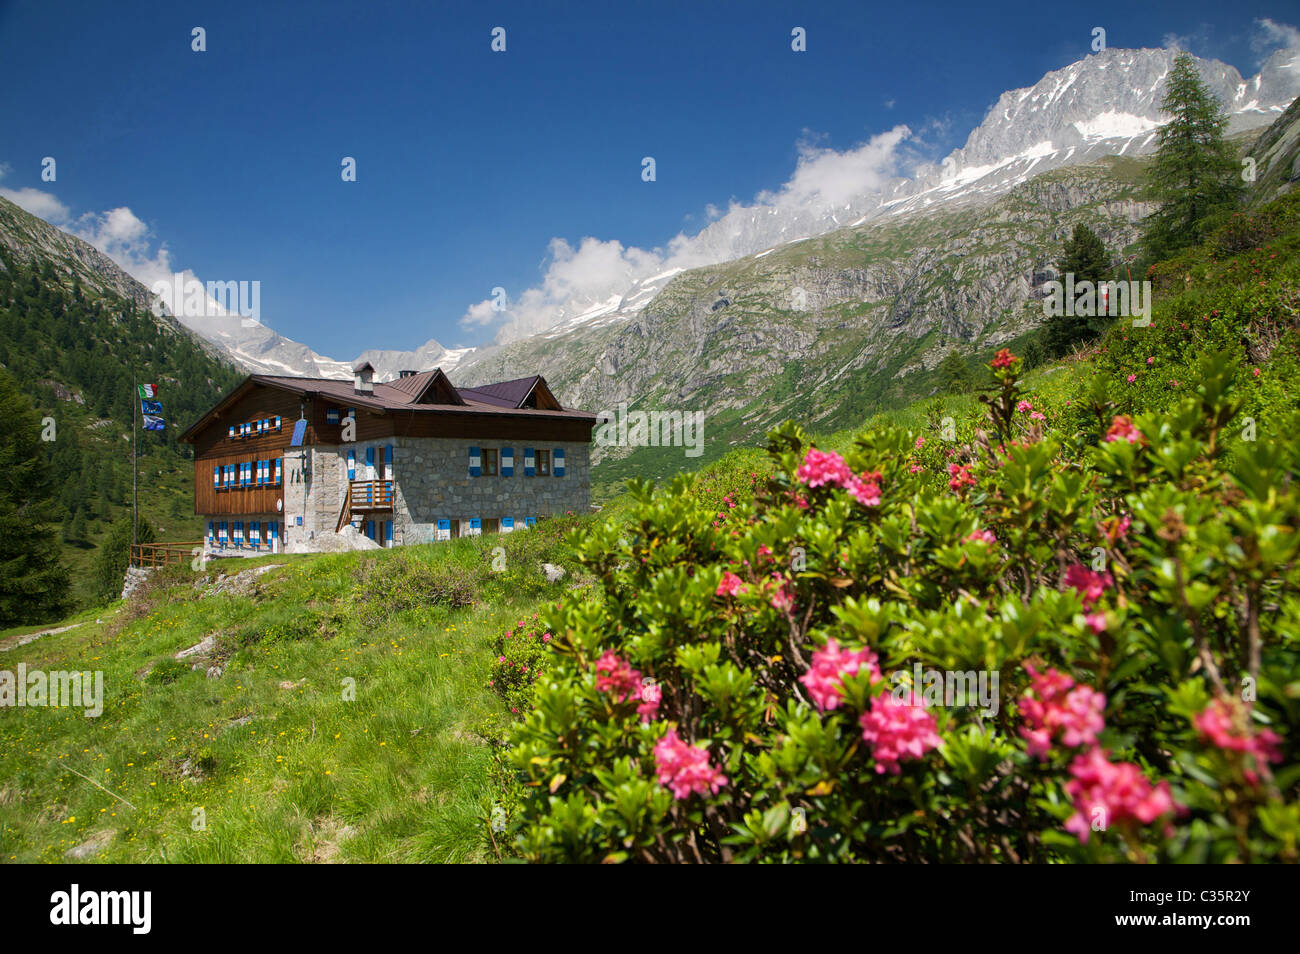 Alpine hut in Adamello-Brenta Natural Park, Fumo Valley, Val di Daone, Valli Giudicarie, Trentino Alto Adige, Italy, Europe Stock Photo